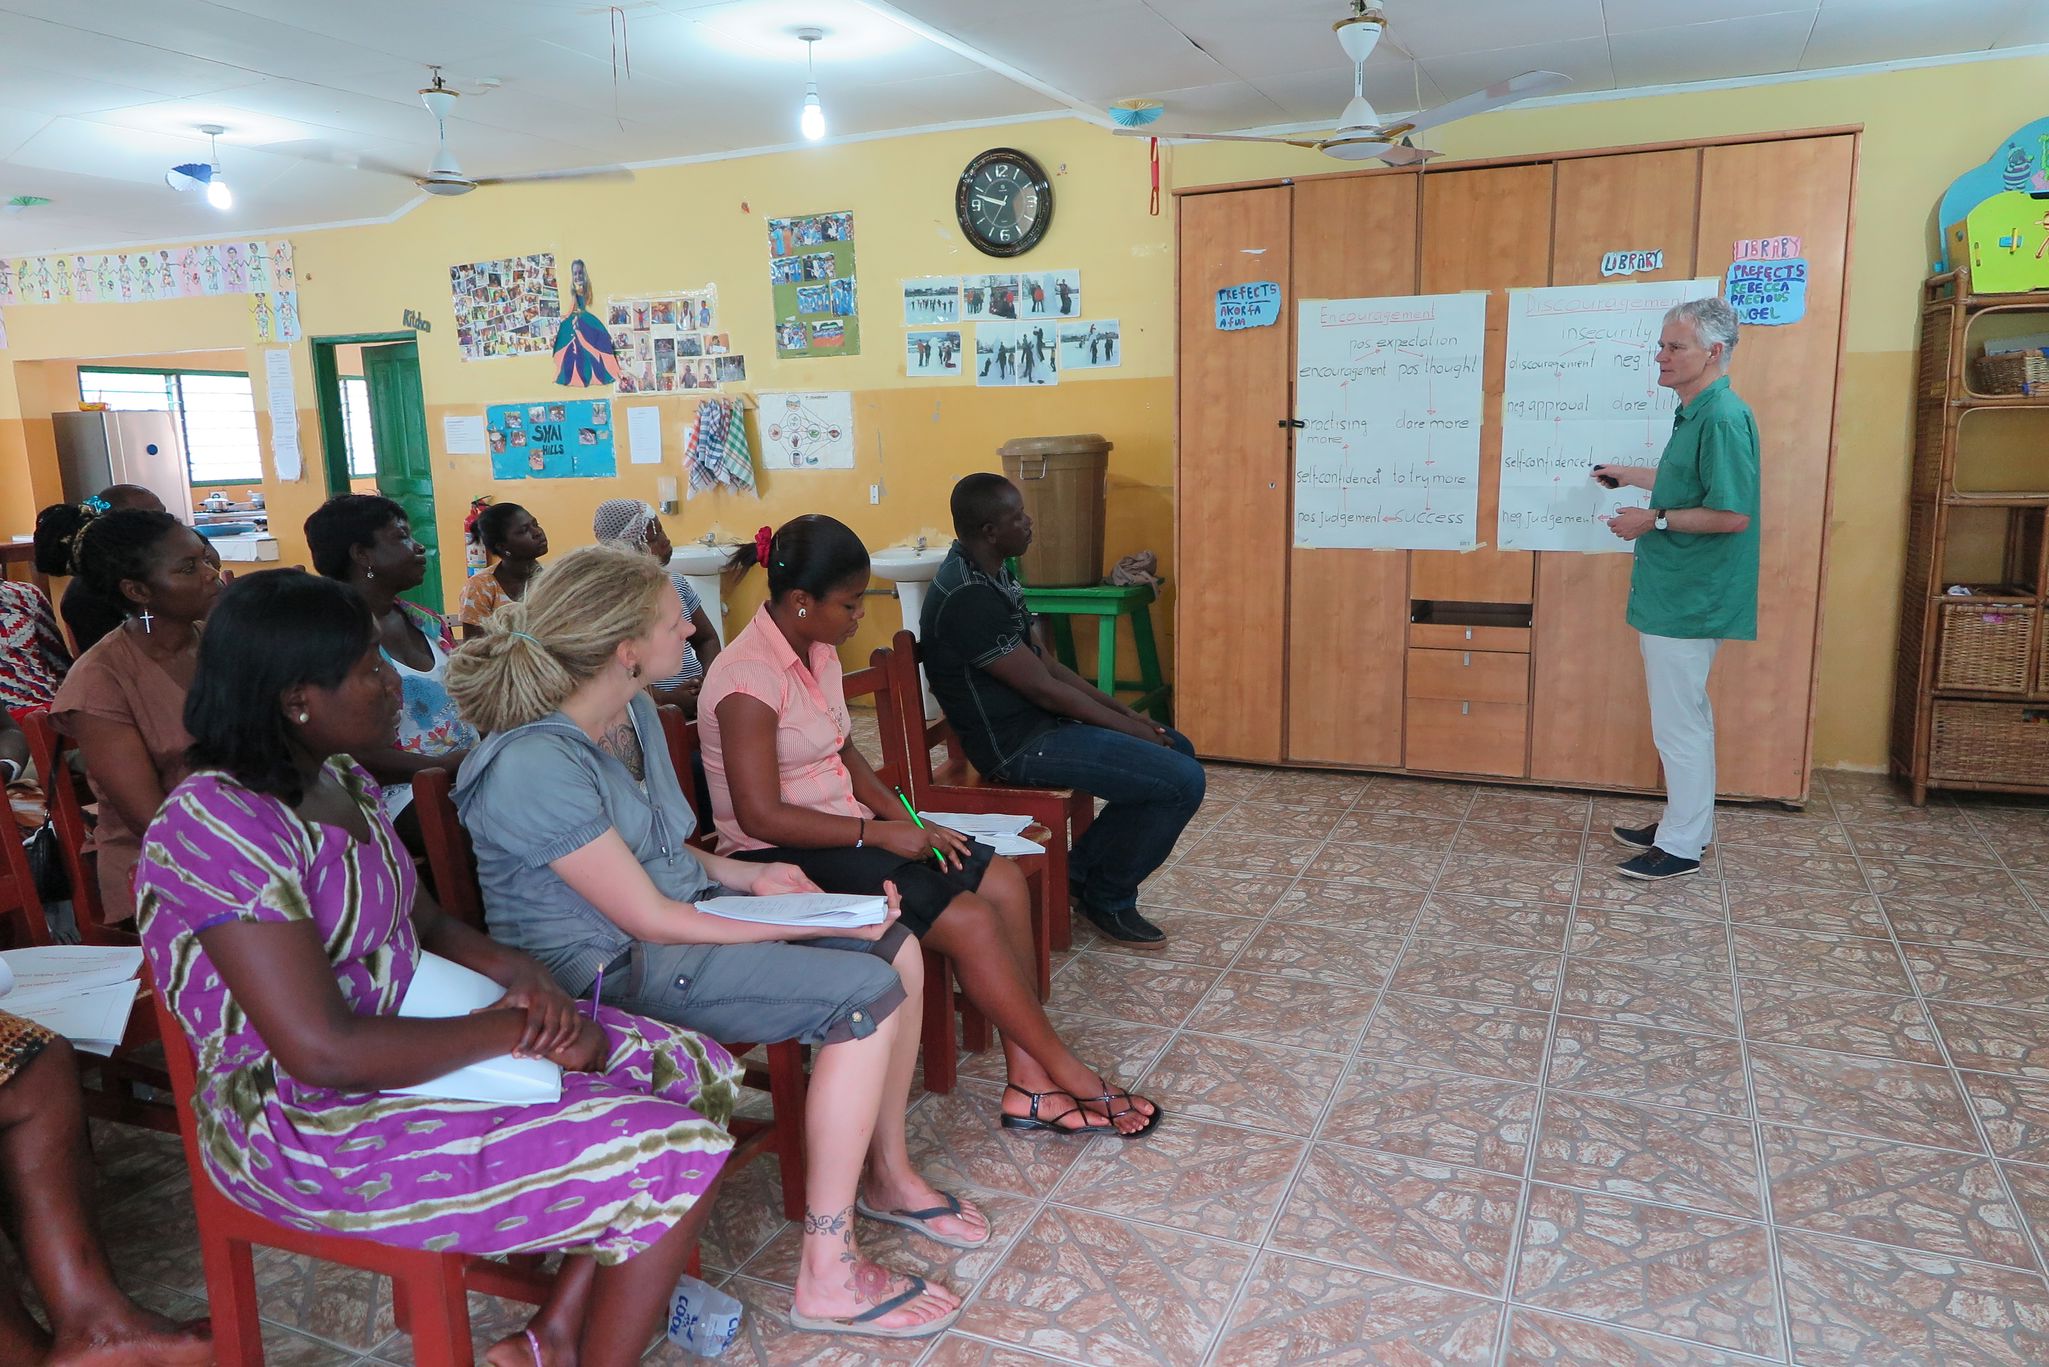 Urs Ruckstuhl. Workshop im Heim von "Chance for Children" in Hebron, ausserhalb von Accra.